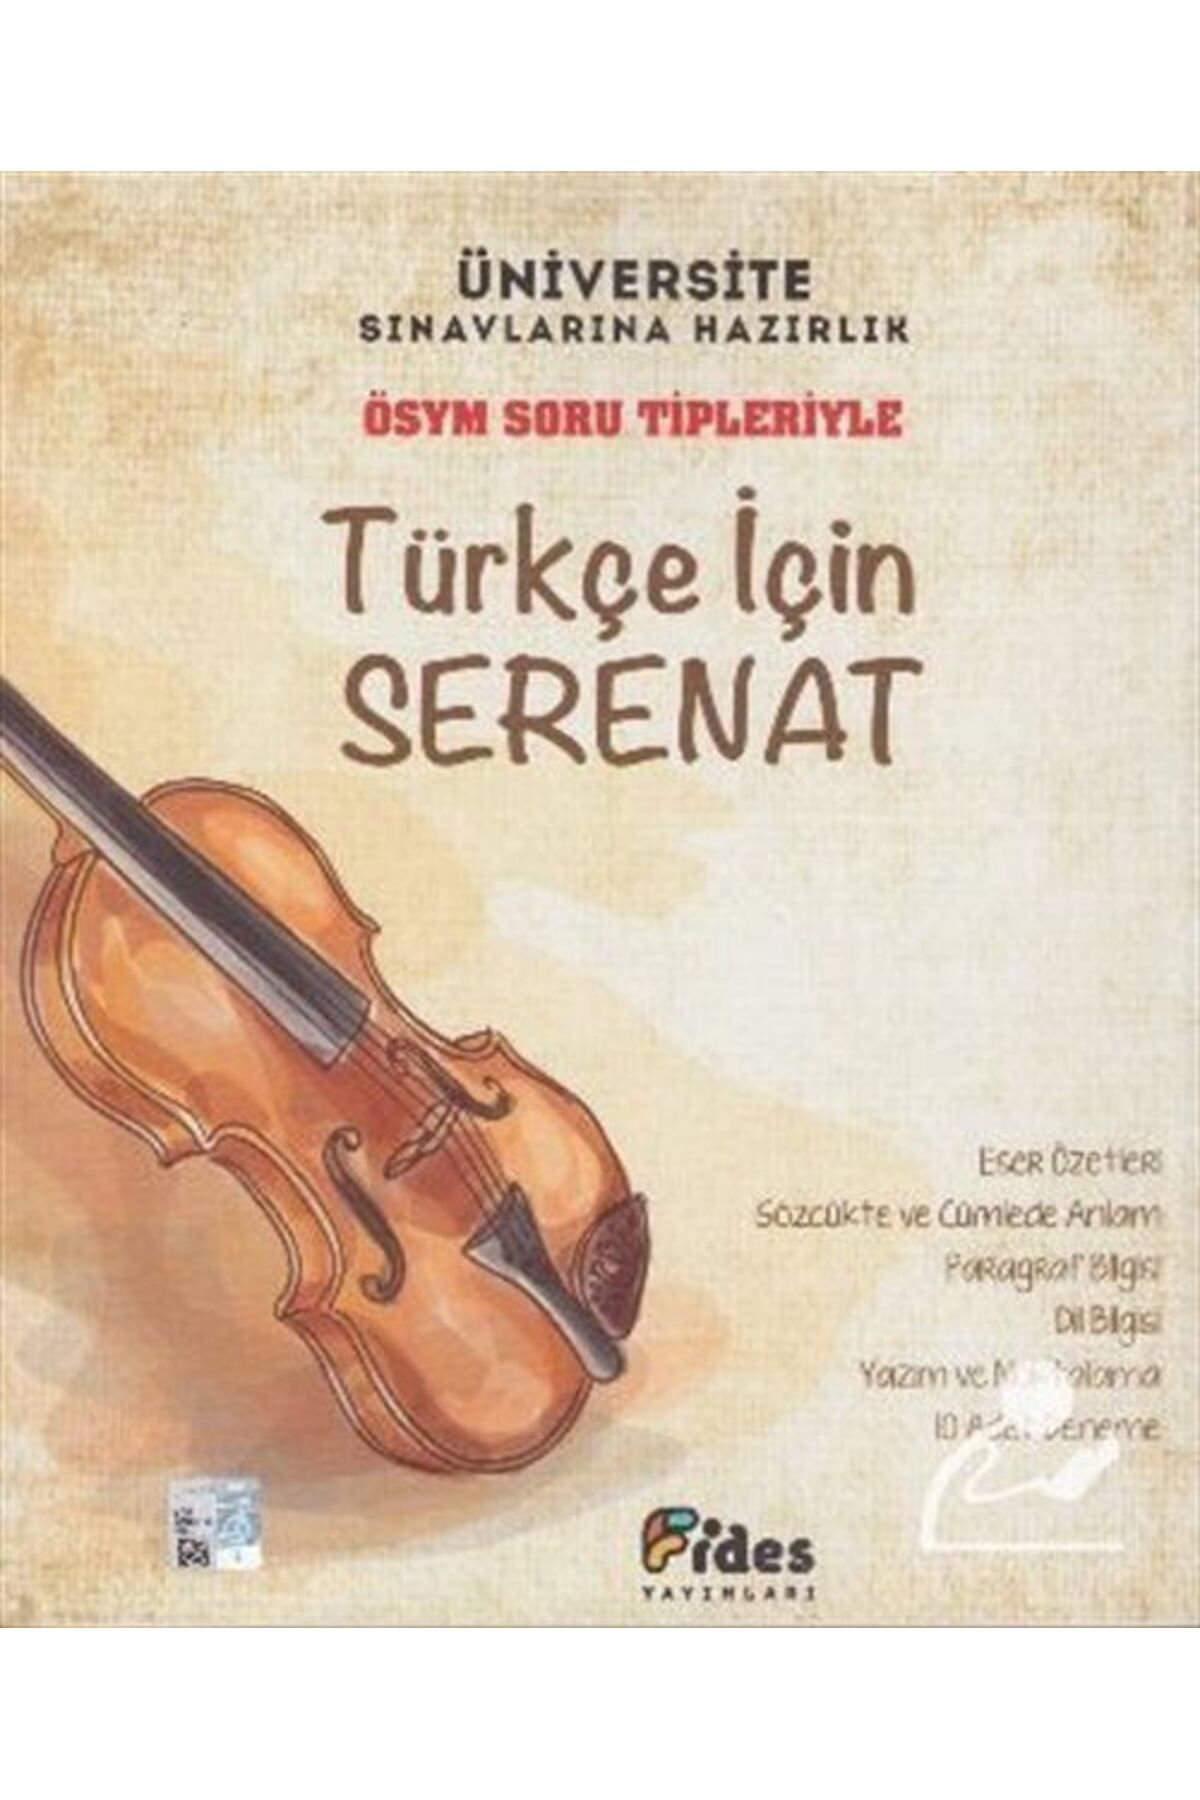 Fides Yayınları Ösym Soru Tipleriyle Türkçe Için Serenat